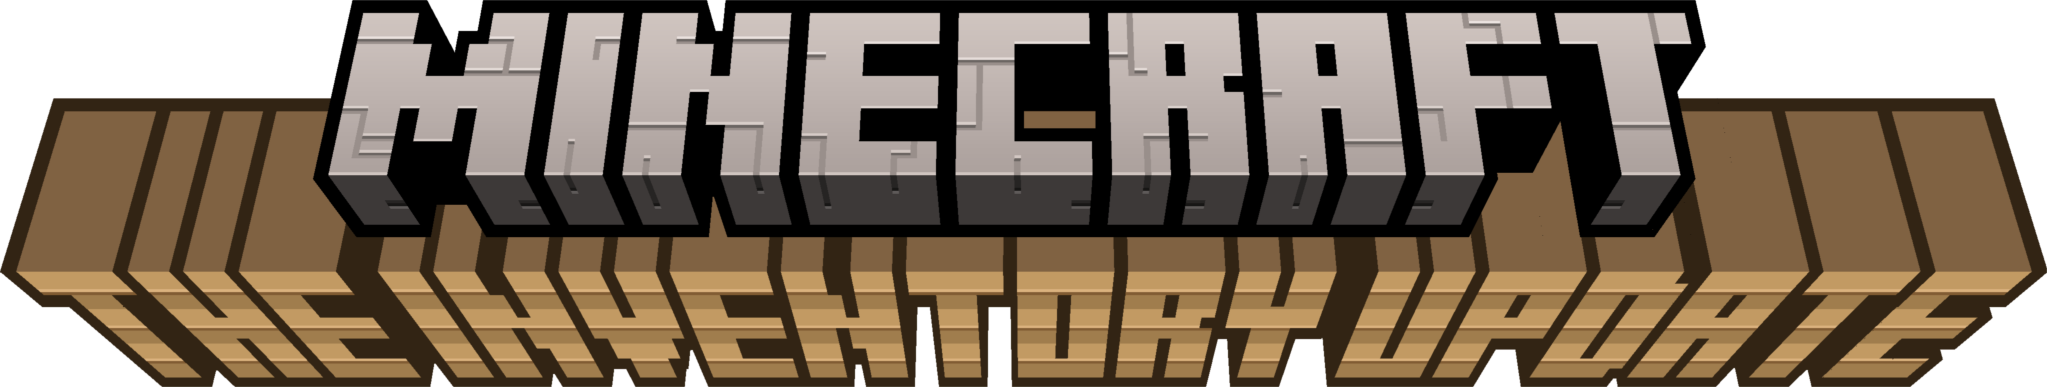 logo minecraft the inventory update